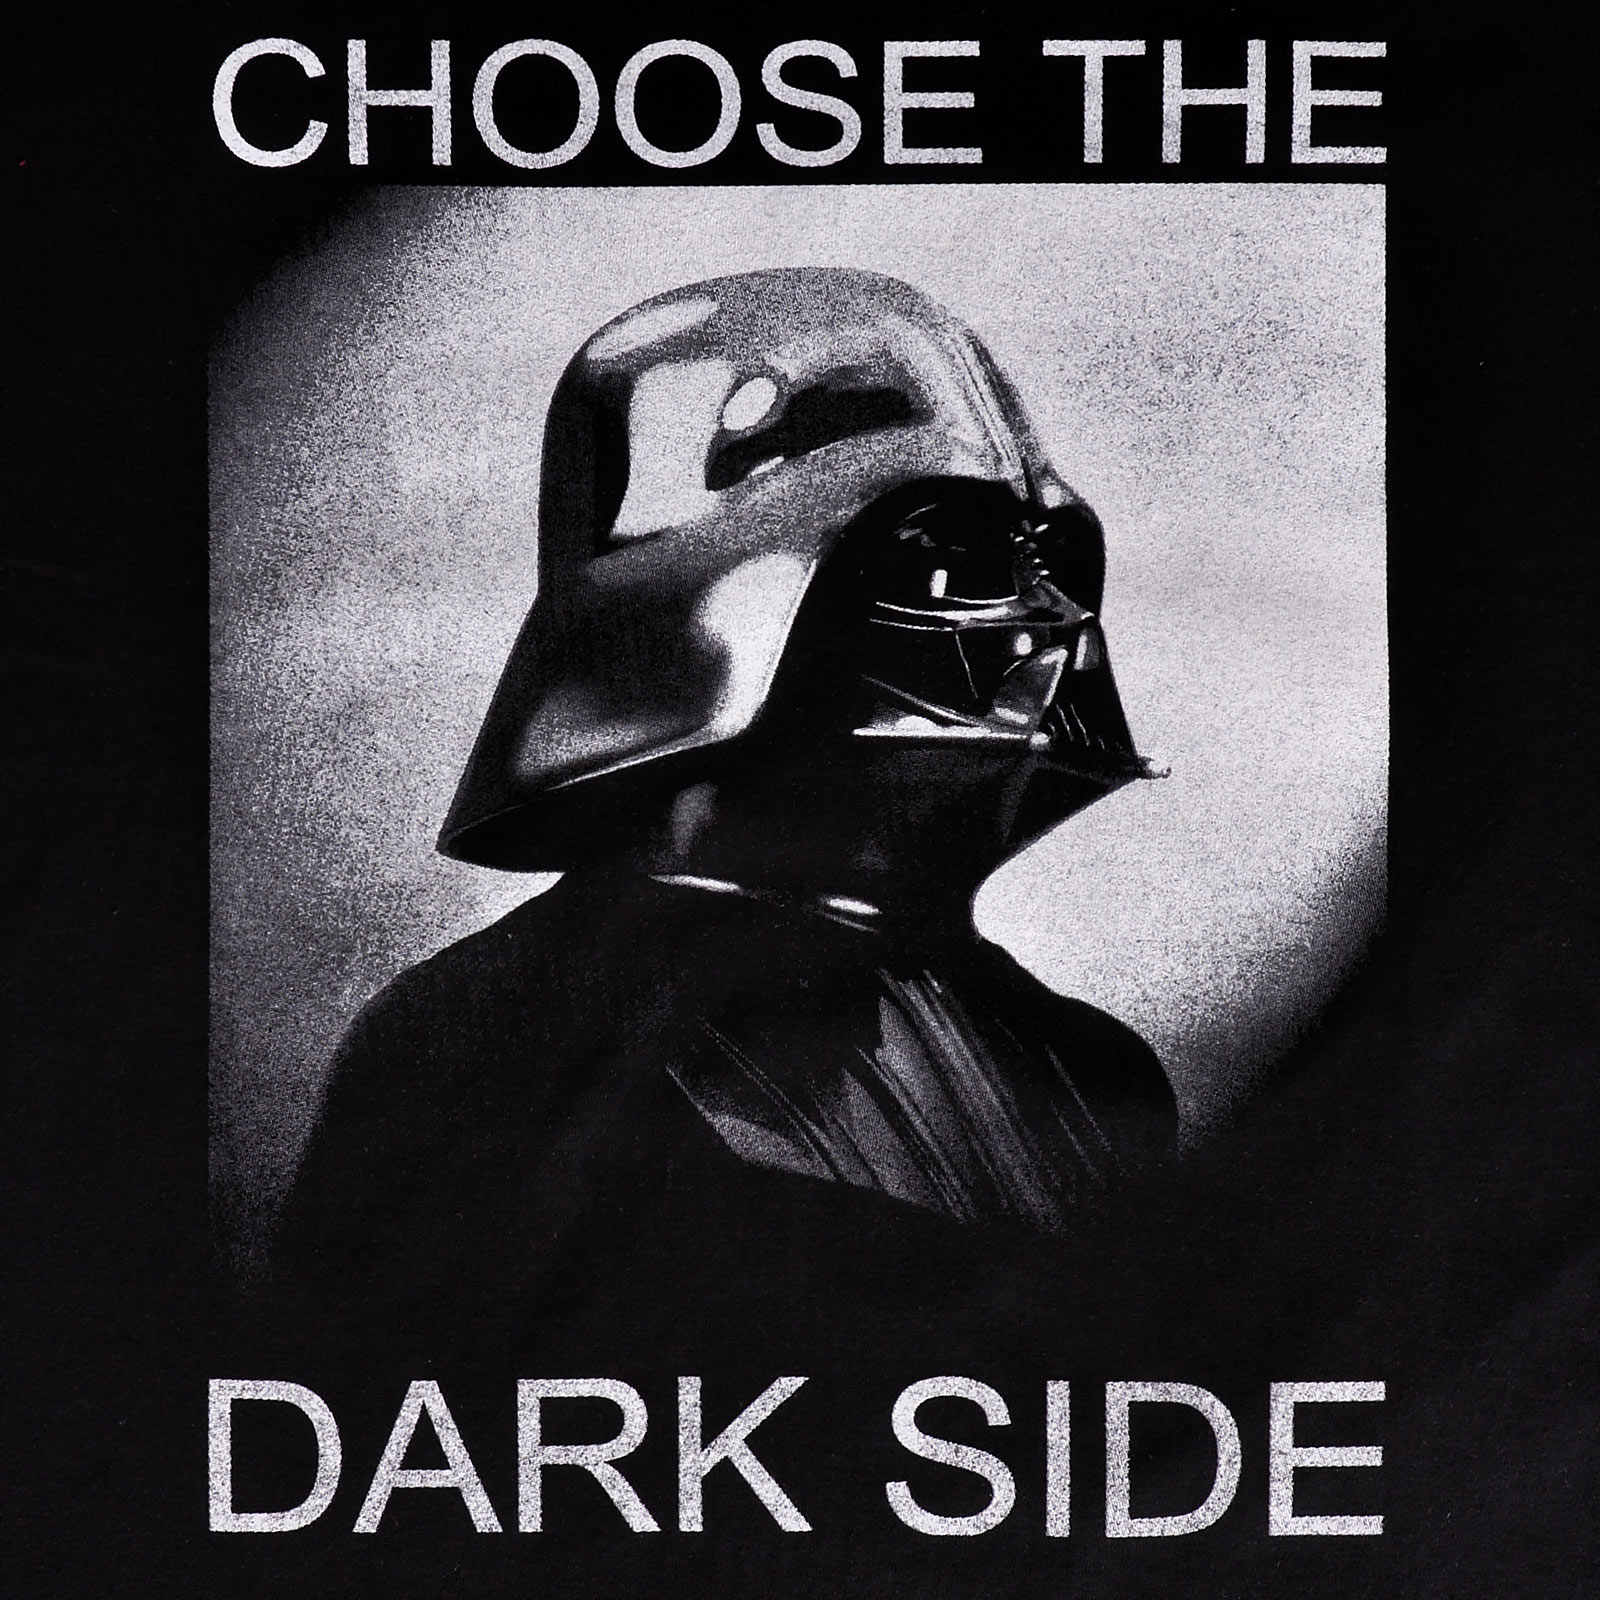 Star Wars - Darth Vader Choose the Dark Side T-Shirt schwarz